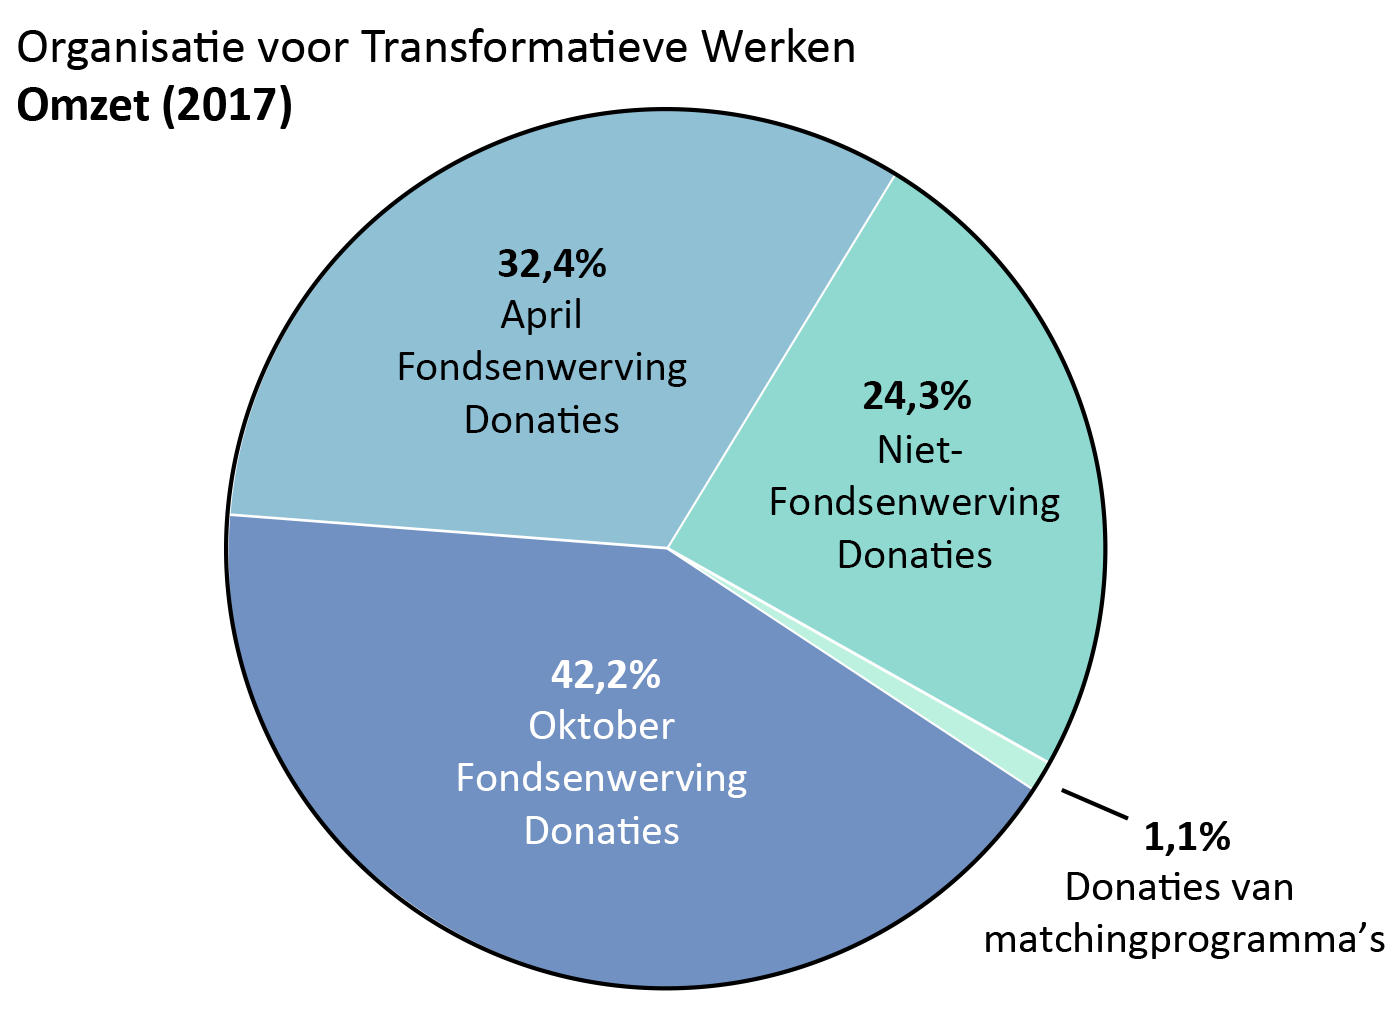 OTW omzet: april fondsenwerving donaties: 32.4%, oktober fondsenwerving donaties: 42.2%. Niet-fondsenwerving donaties: 24.3%. Donaties van matchingprogramma’s: 1.1%.